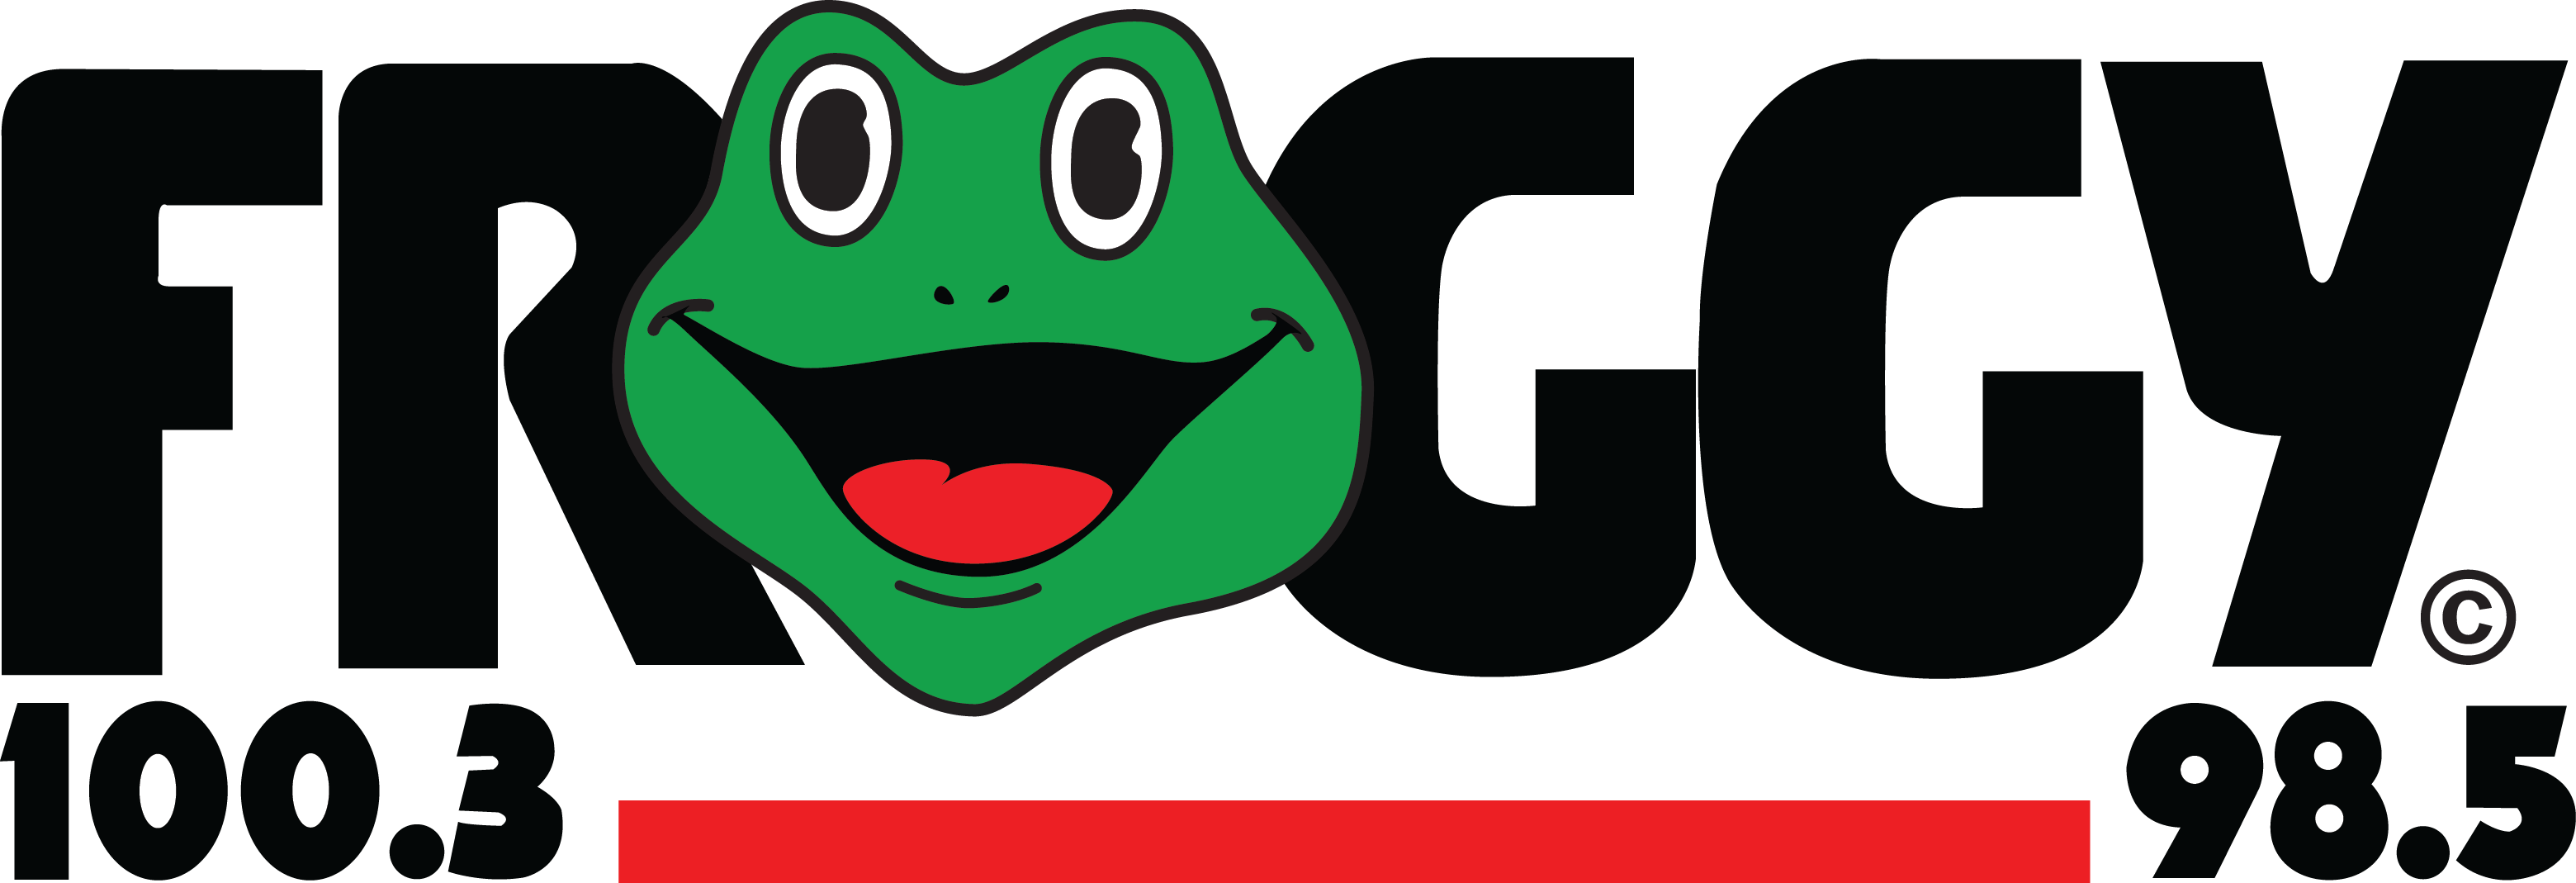 Froggy - Froggy 101 Bumper Sticker (3120x1069)